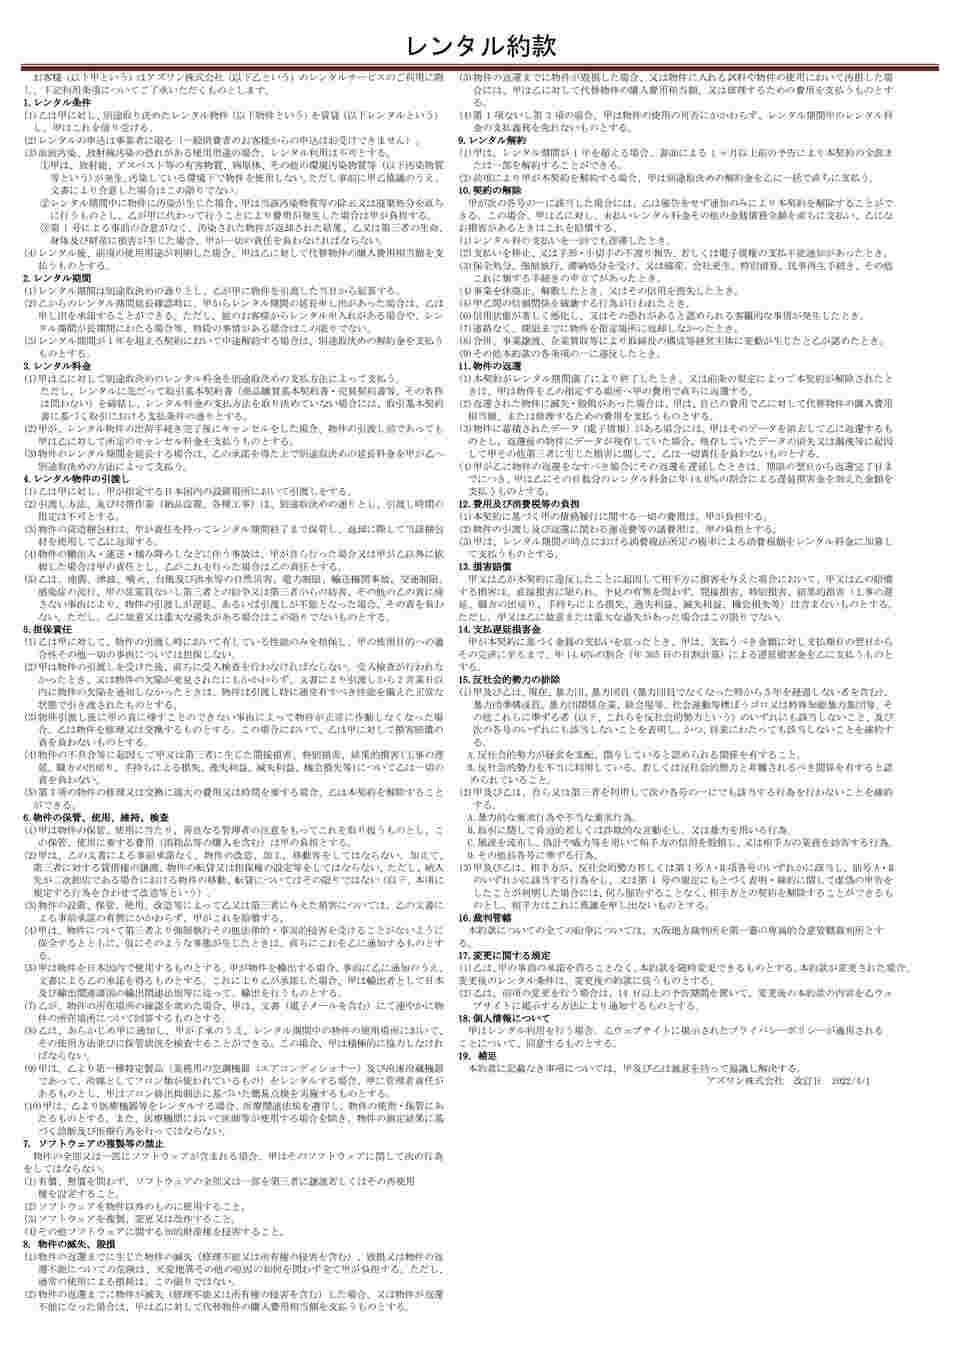 1-4603-22-60 マグネチックスターラーREXIMシリーズ レンタル5日 RP 